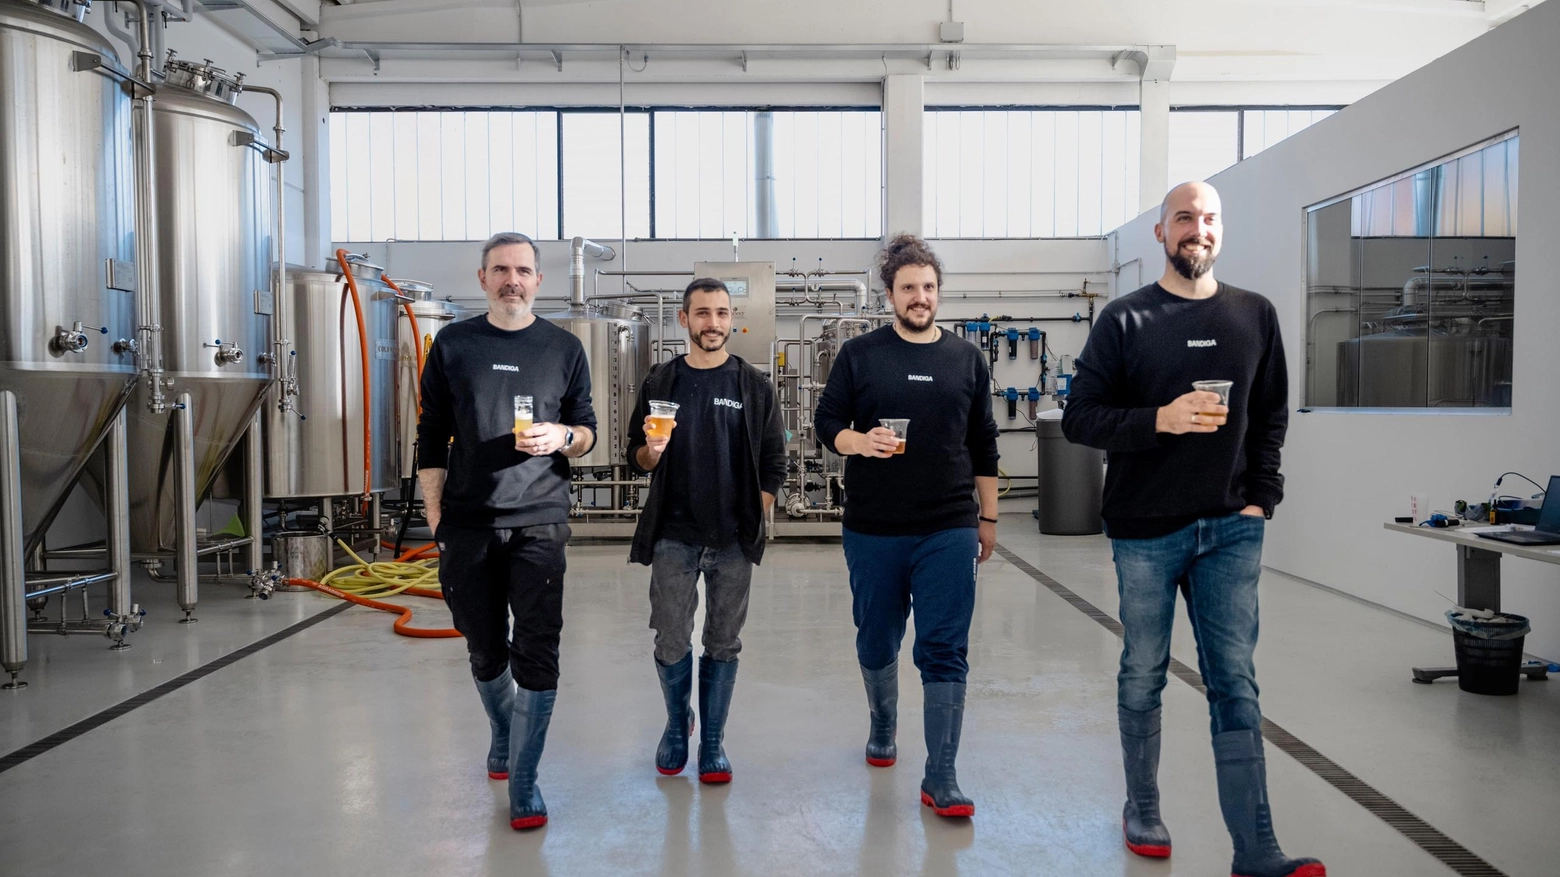 Quattro amici, che si sono conosciuti a un corso di degustazione, hanno aperto una ’brewery’ con pinte artigianali. Happy hour per i clienti